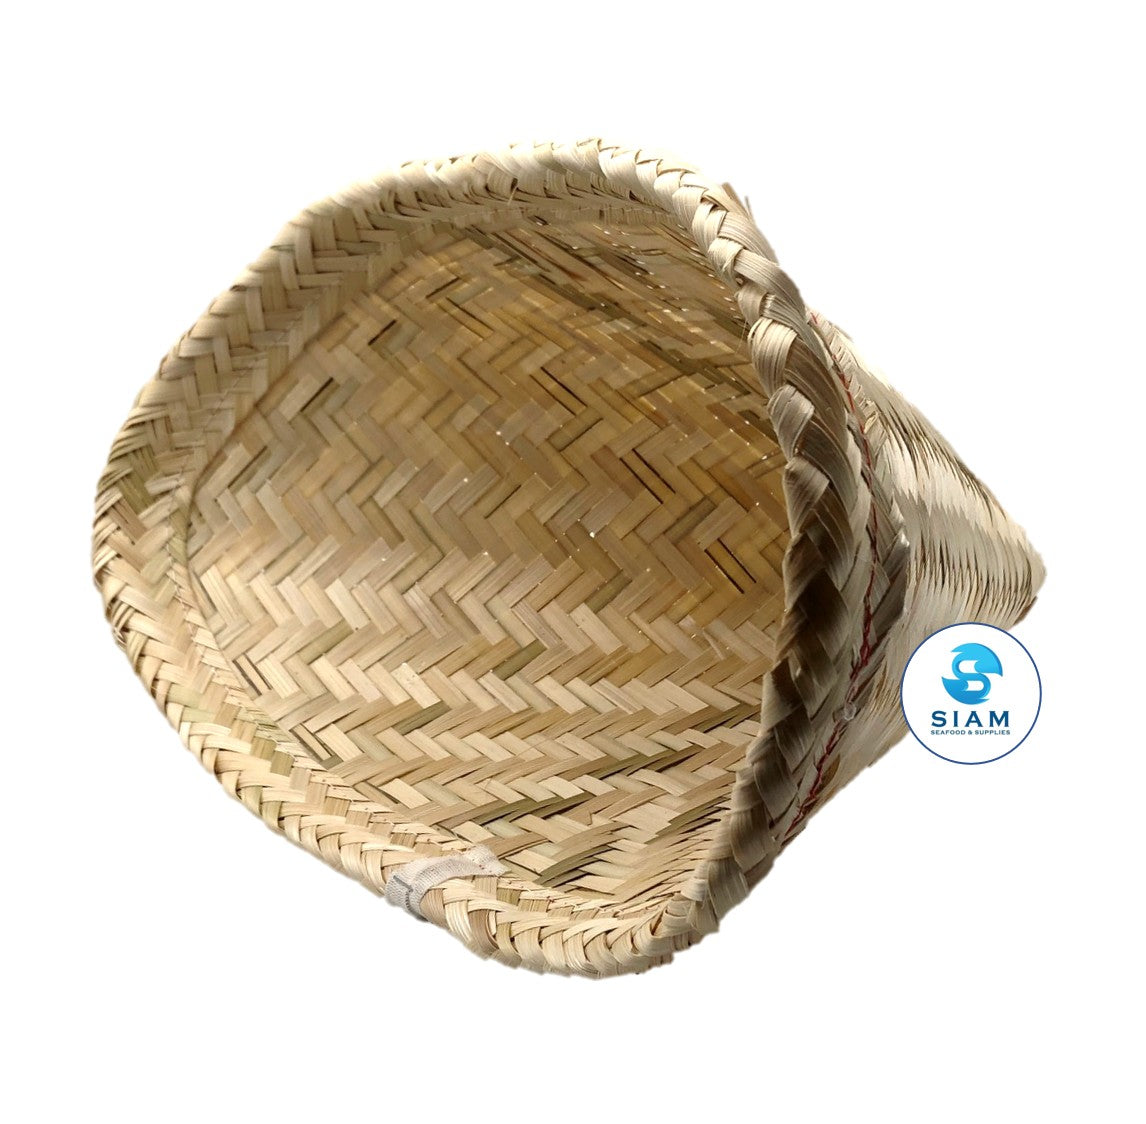 Thai Sticky Rice Steamer (Basket ) by Cintbllter